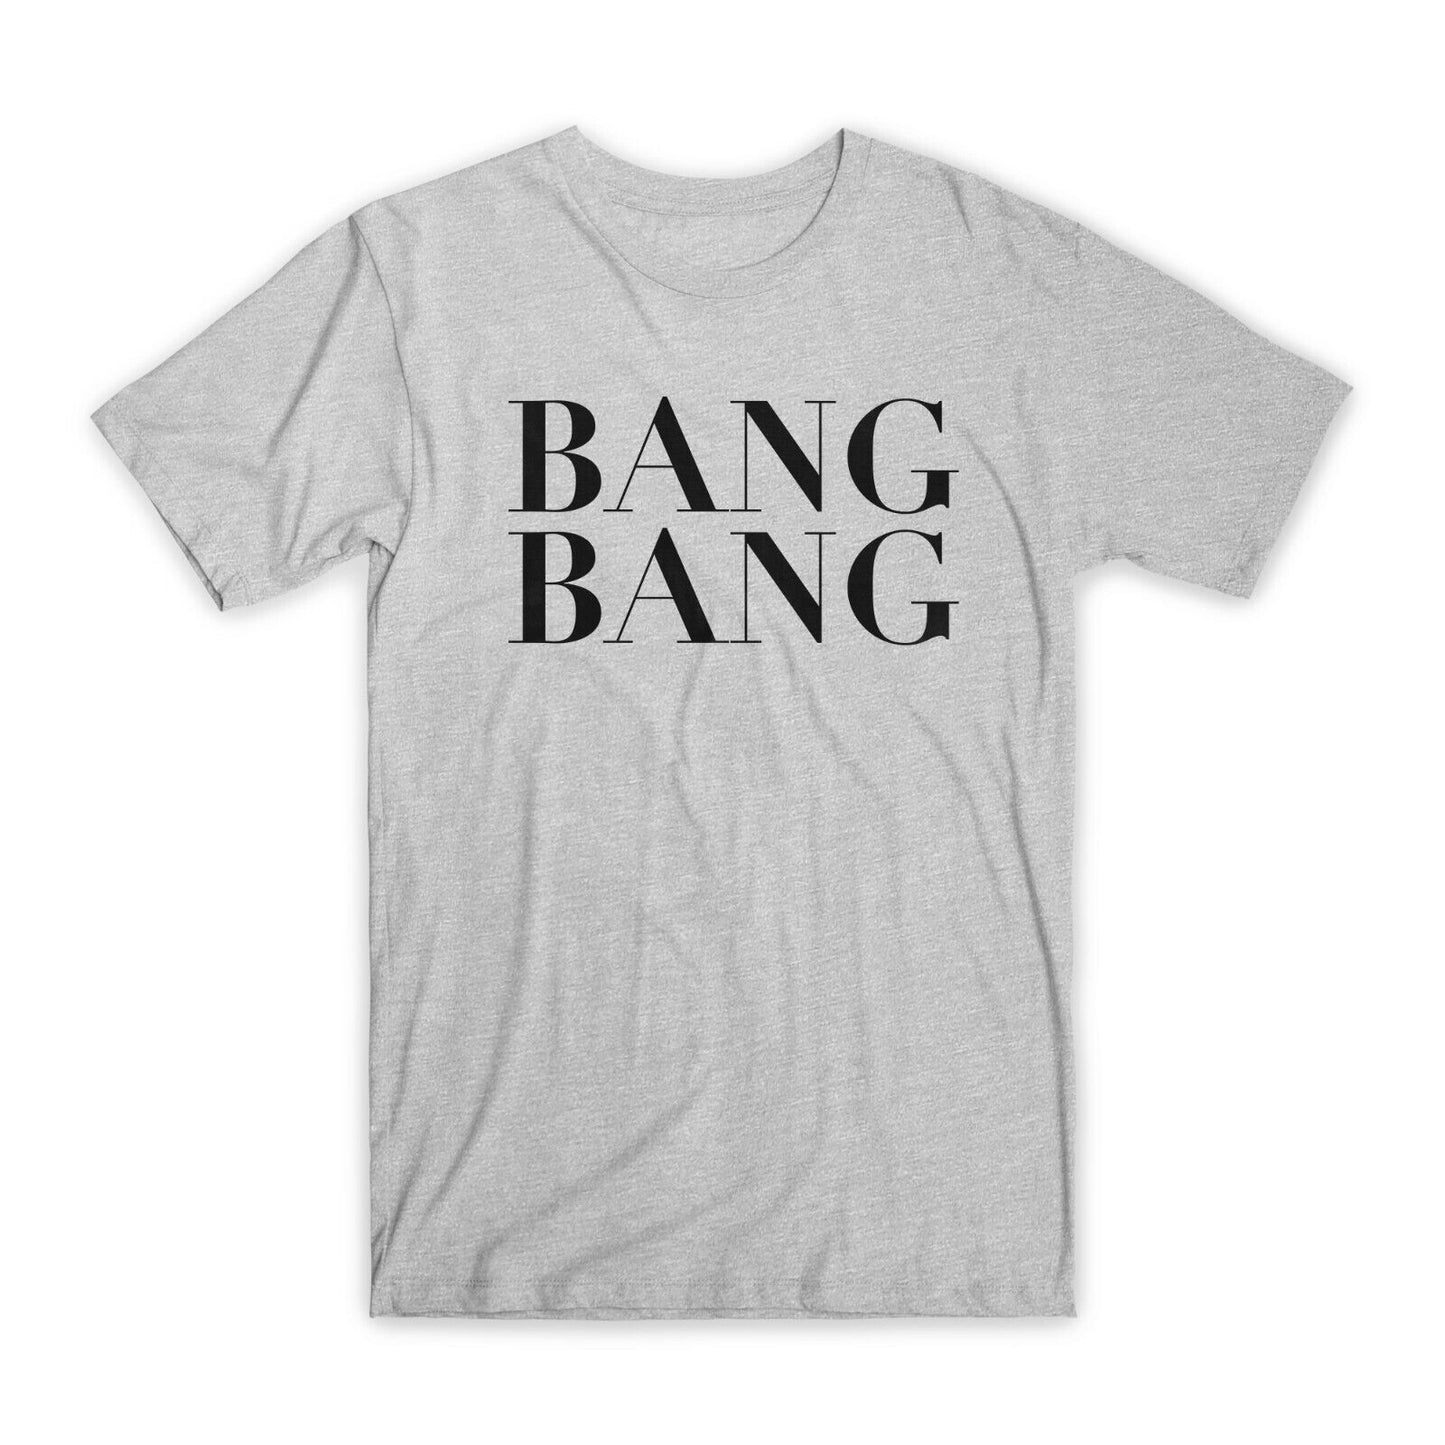 Bang Bang Print T-Shirt Premium Soft Cotton Crew Neck Funny Tee Novelty Gift NEW